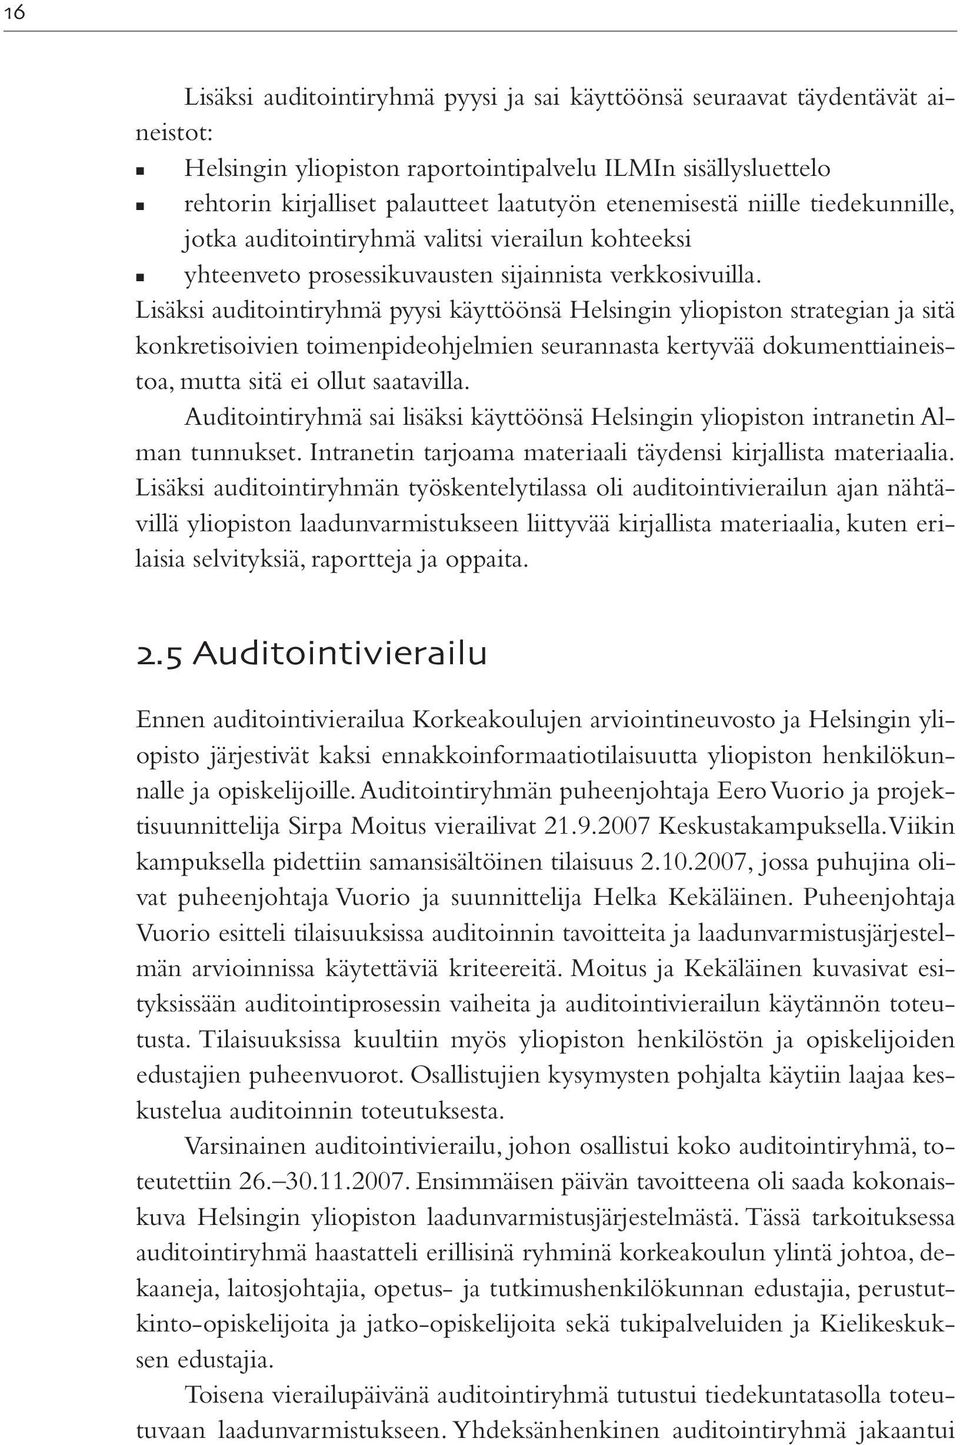 Lisäksi auditointiryhmä pyysi käyttöönsä Helsingin yliopiston strategian ja sitä konkretisoivien toimenpideohjelmien seurannasta kertyvää dokumenttiaineistoa, mutta sitä ei ollut saatavilla.